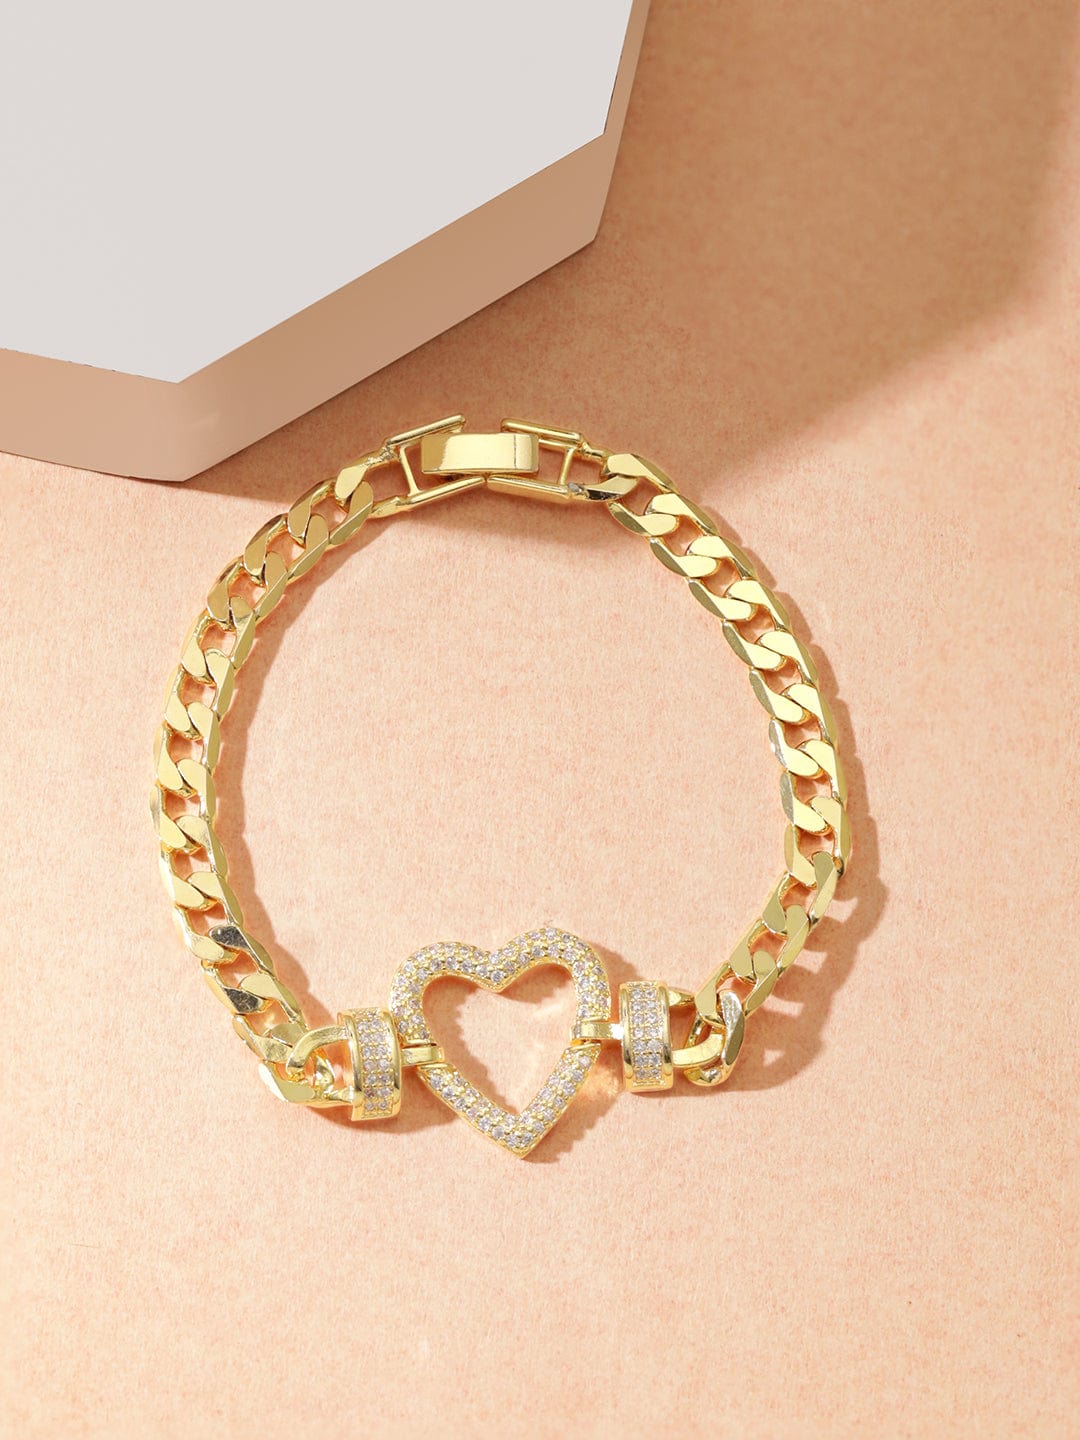 Rubans Voguish 18K Gold Plated Zirconia Pave studded Cuban Chain Heart Classy bracelet Bracelets